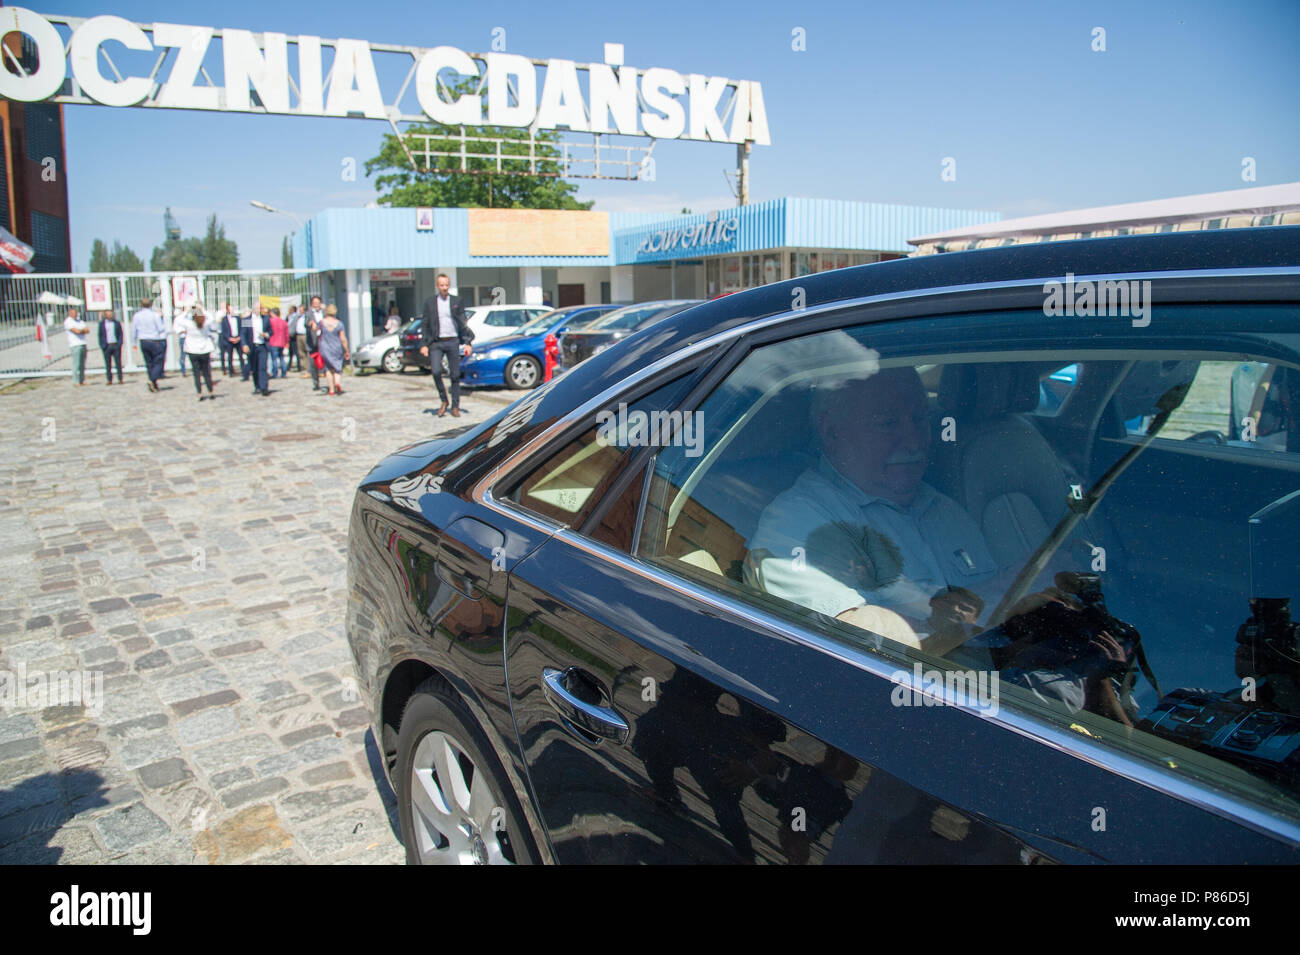 L'ancien président de la Pologne, Lech Walesa, en face de la porte historique n° 2 du chantier naval de Gdansk à Gdansk, Pologne. 4 juillet 2018 © Wojciech Strozyk / Alamy Banque D'Images